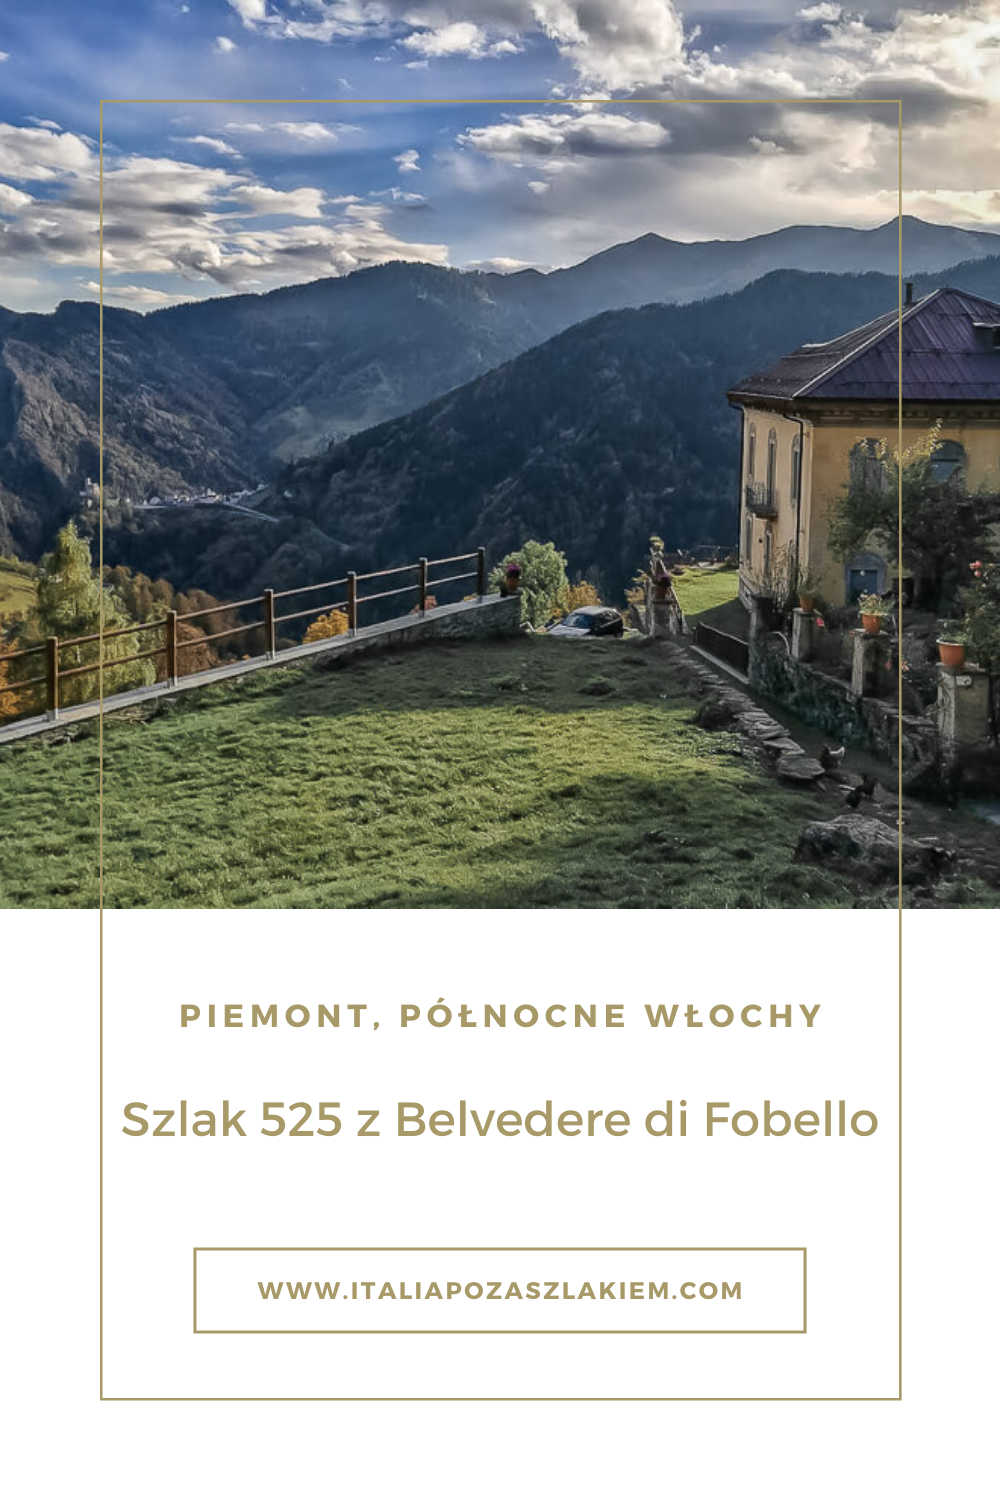 Belvedere di Fobello, północny Piemont, szlak 525